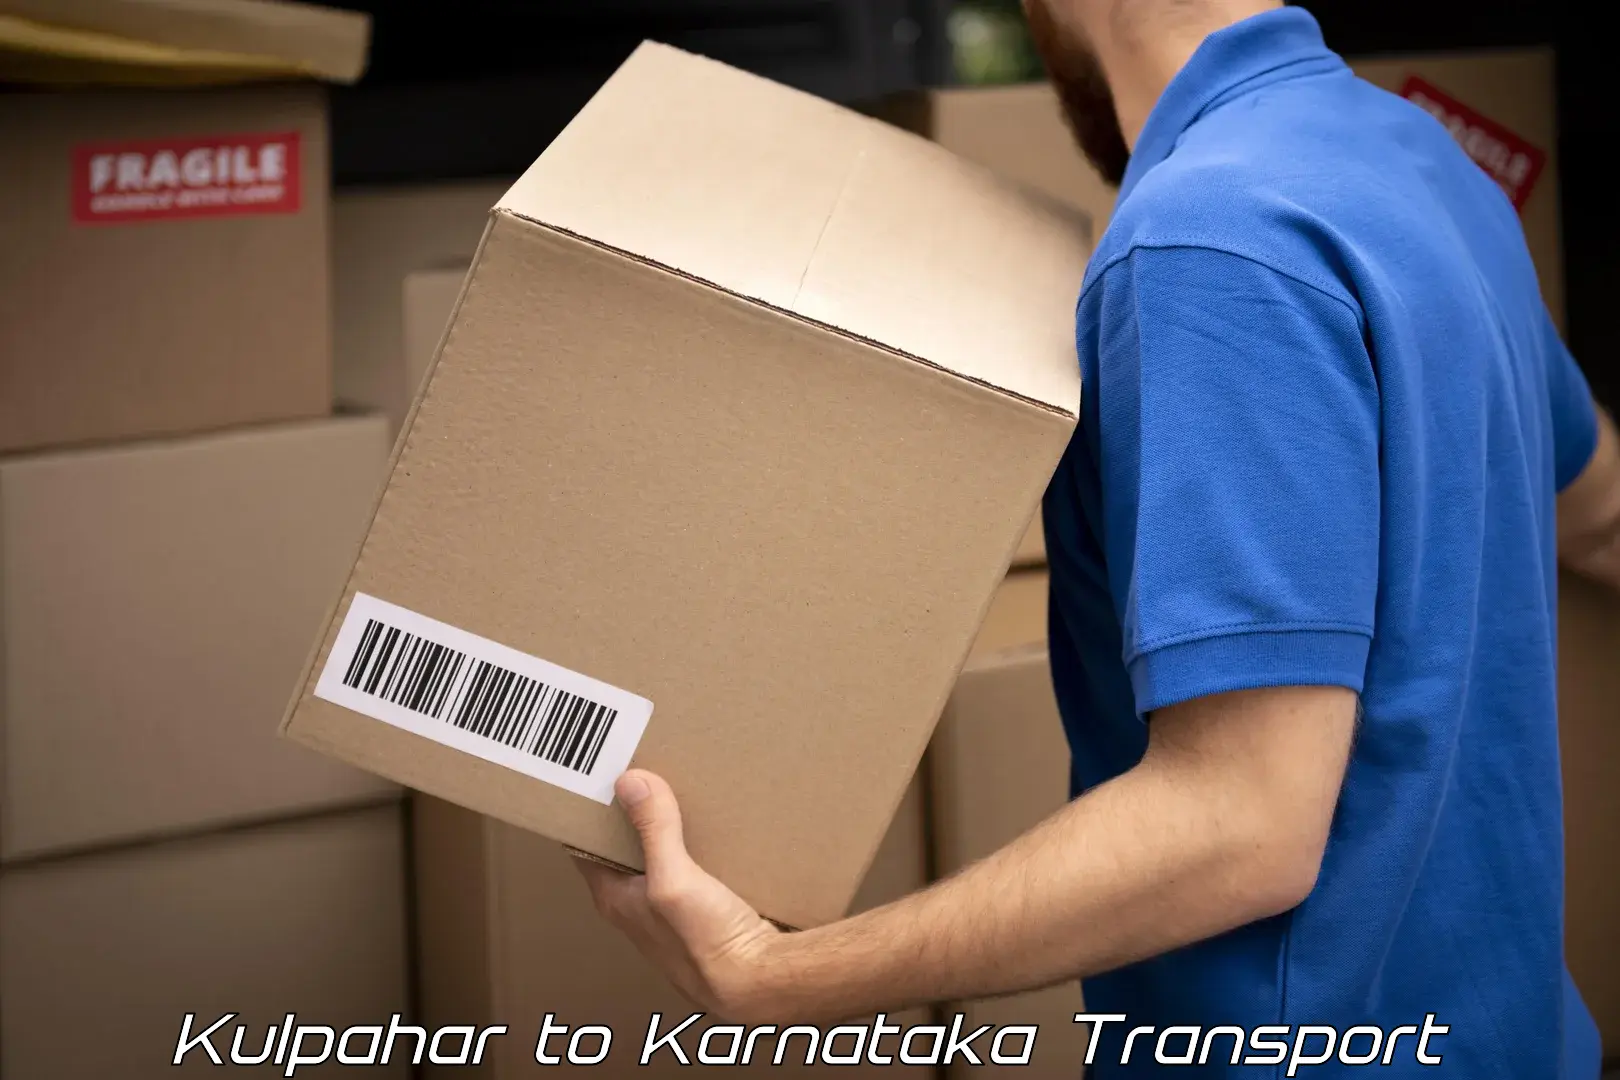 Cargo transportation services Kulpahar to Kotturu